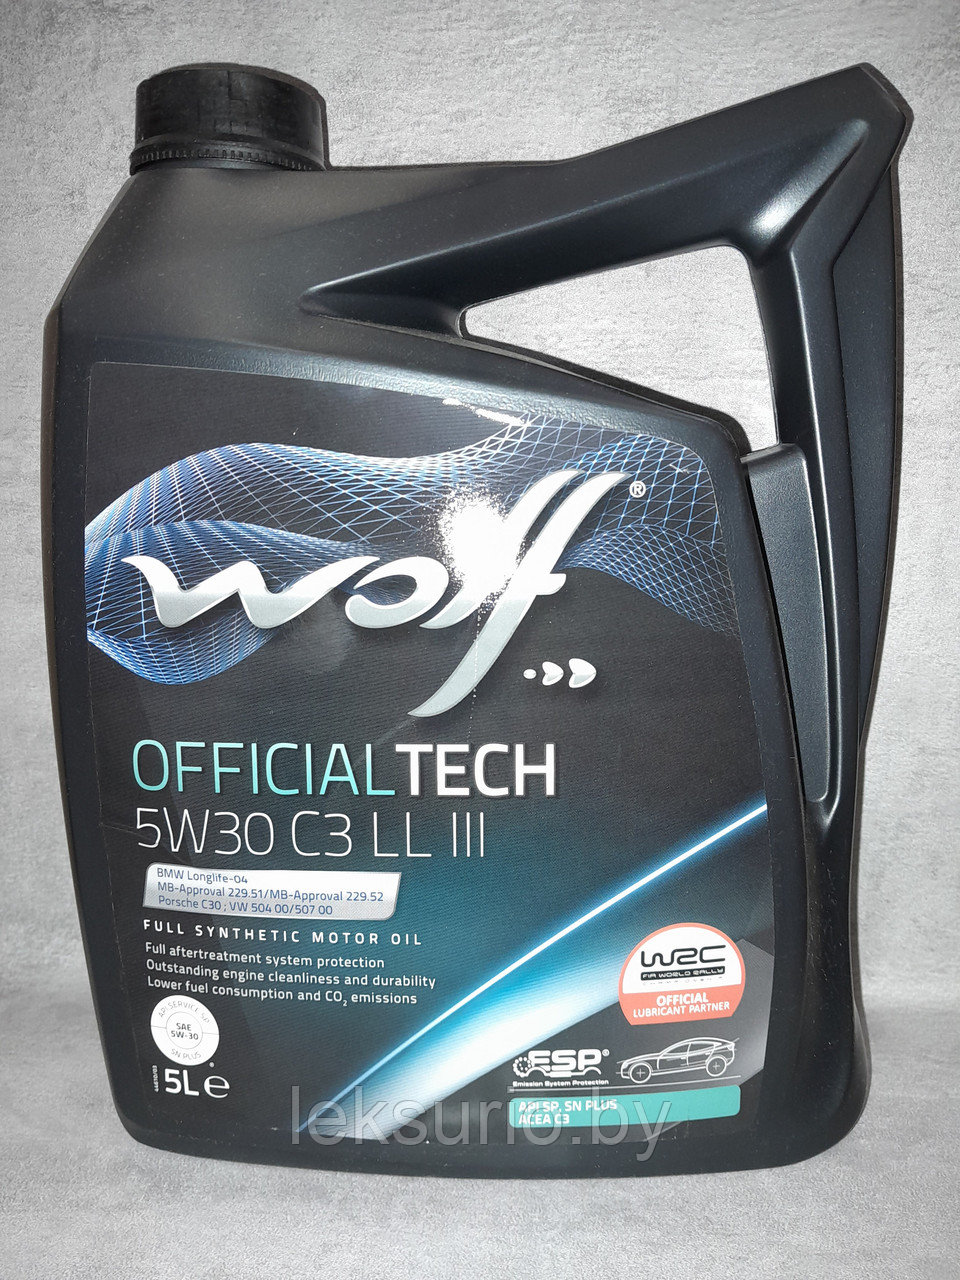 WOLF OfficialTech 5W-30 LL III 5л моторное масло (Бельгия) для Volkswagen